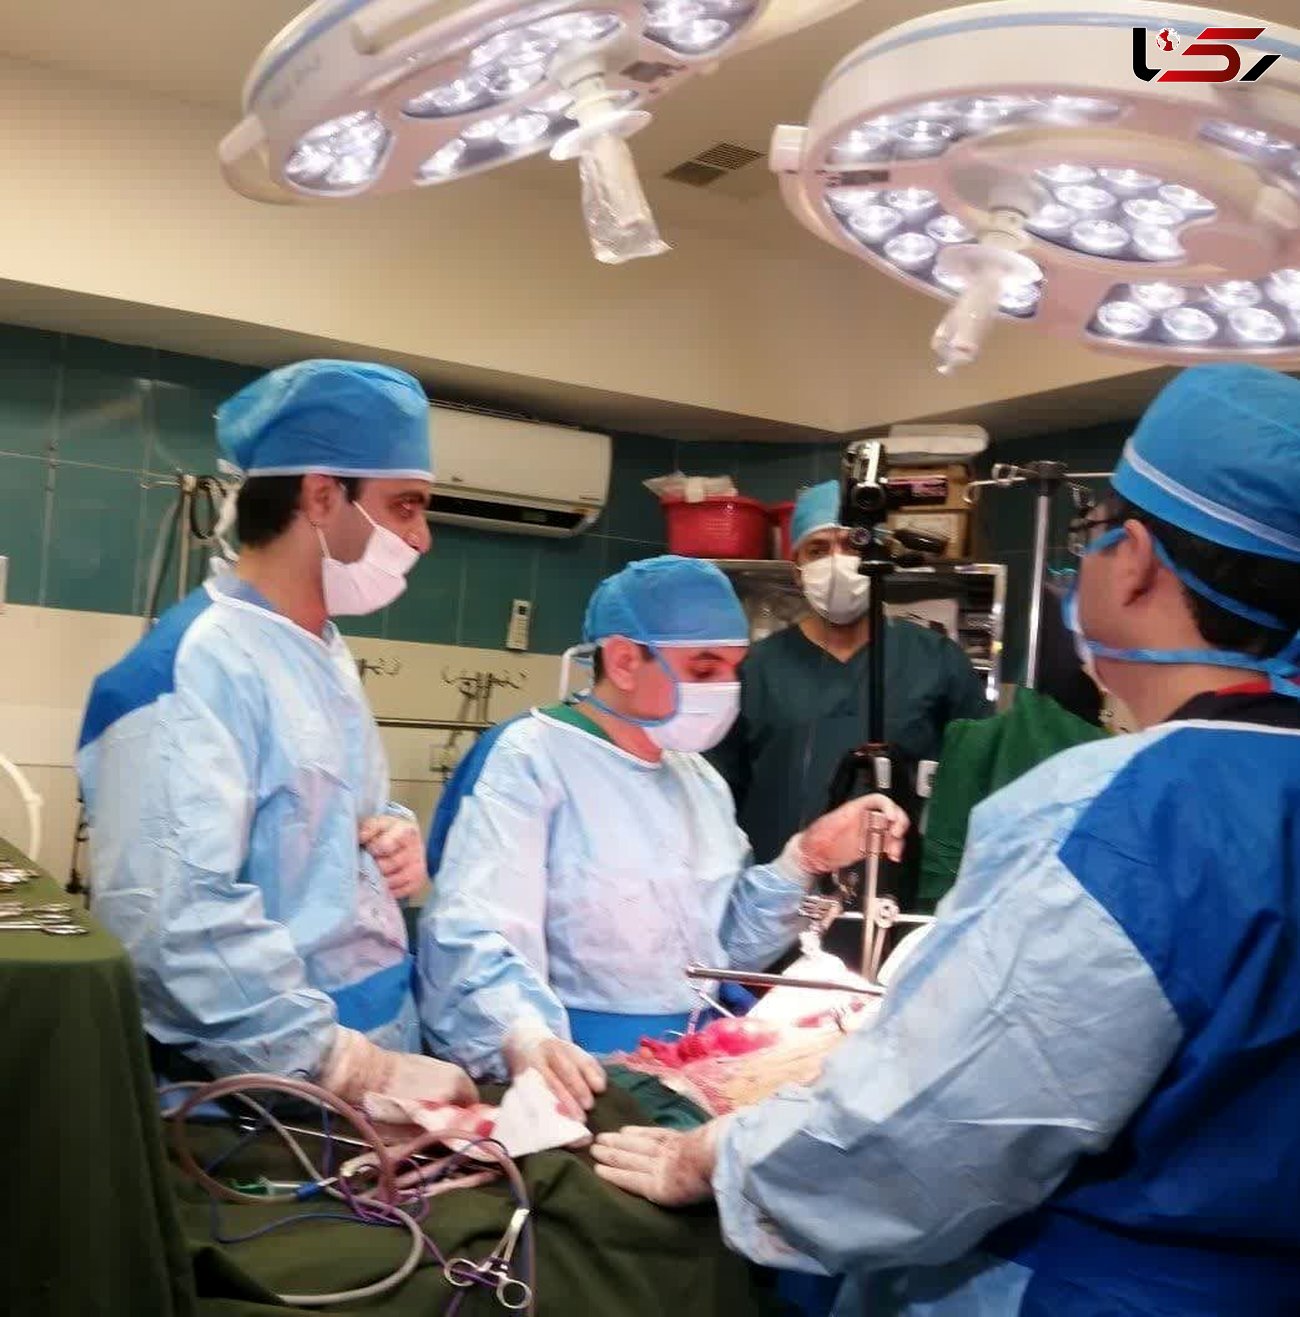 موفقیت تیم جراحی یزد در یک عمل نادر